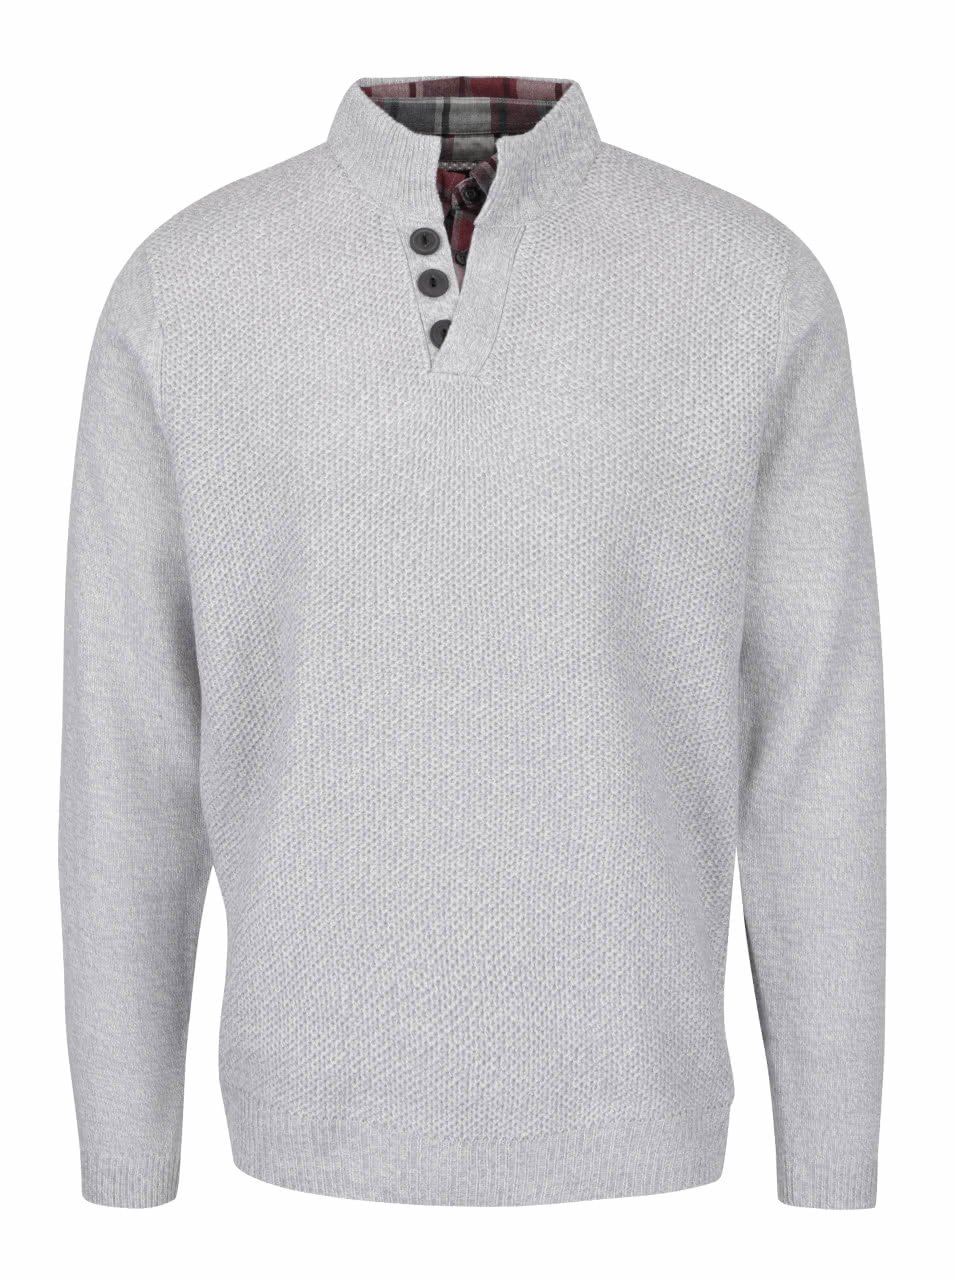 Šedý svetr s košilovým límcem Burton Menswear London